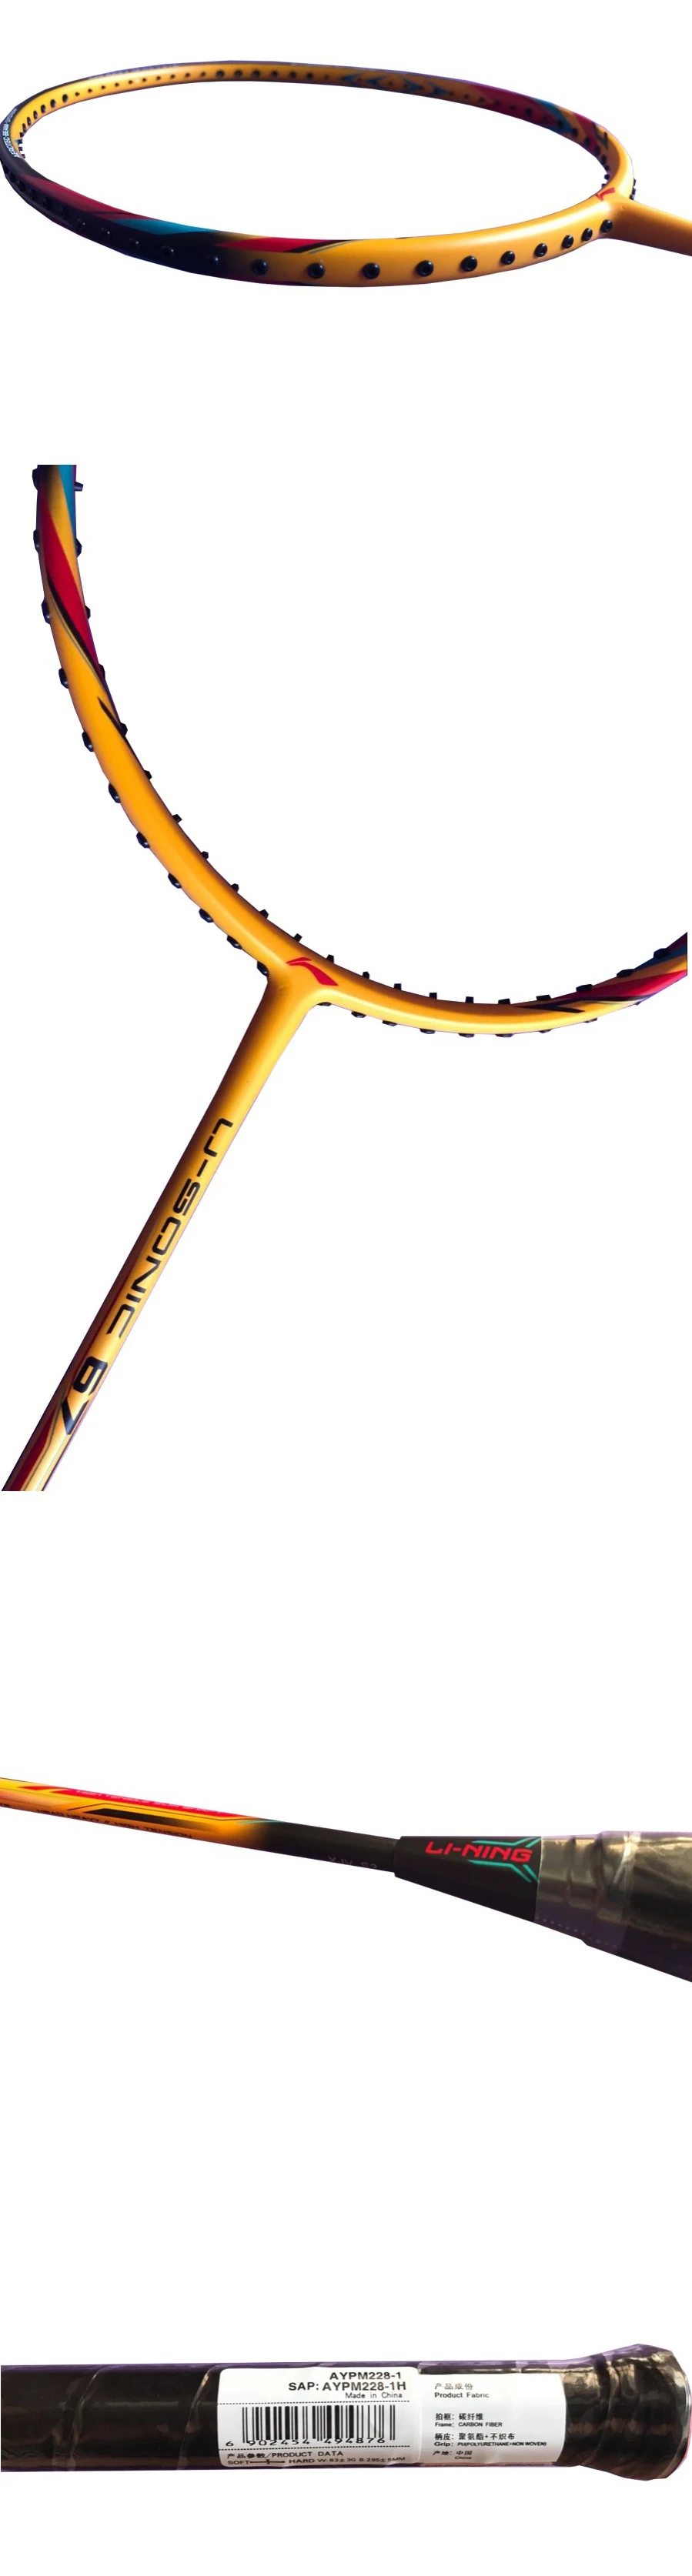 Подлинная Li-Ning профессиональная ракетка для бадминтона, Высококачественная Спортивная ракетка Li Ning с подарками и сумкой L999OLB